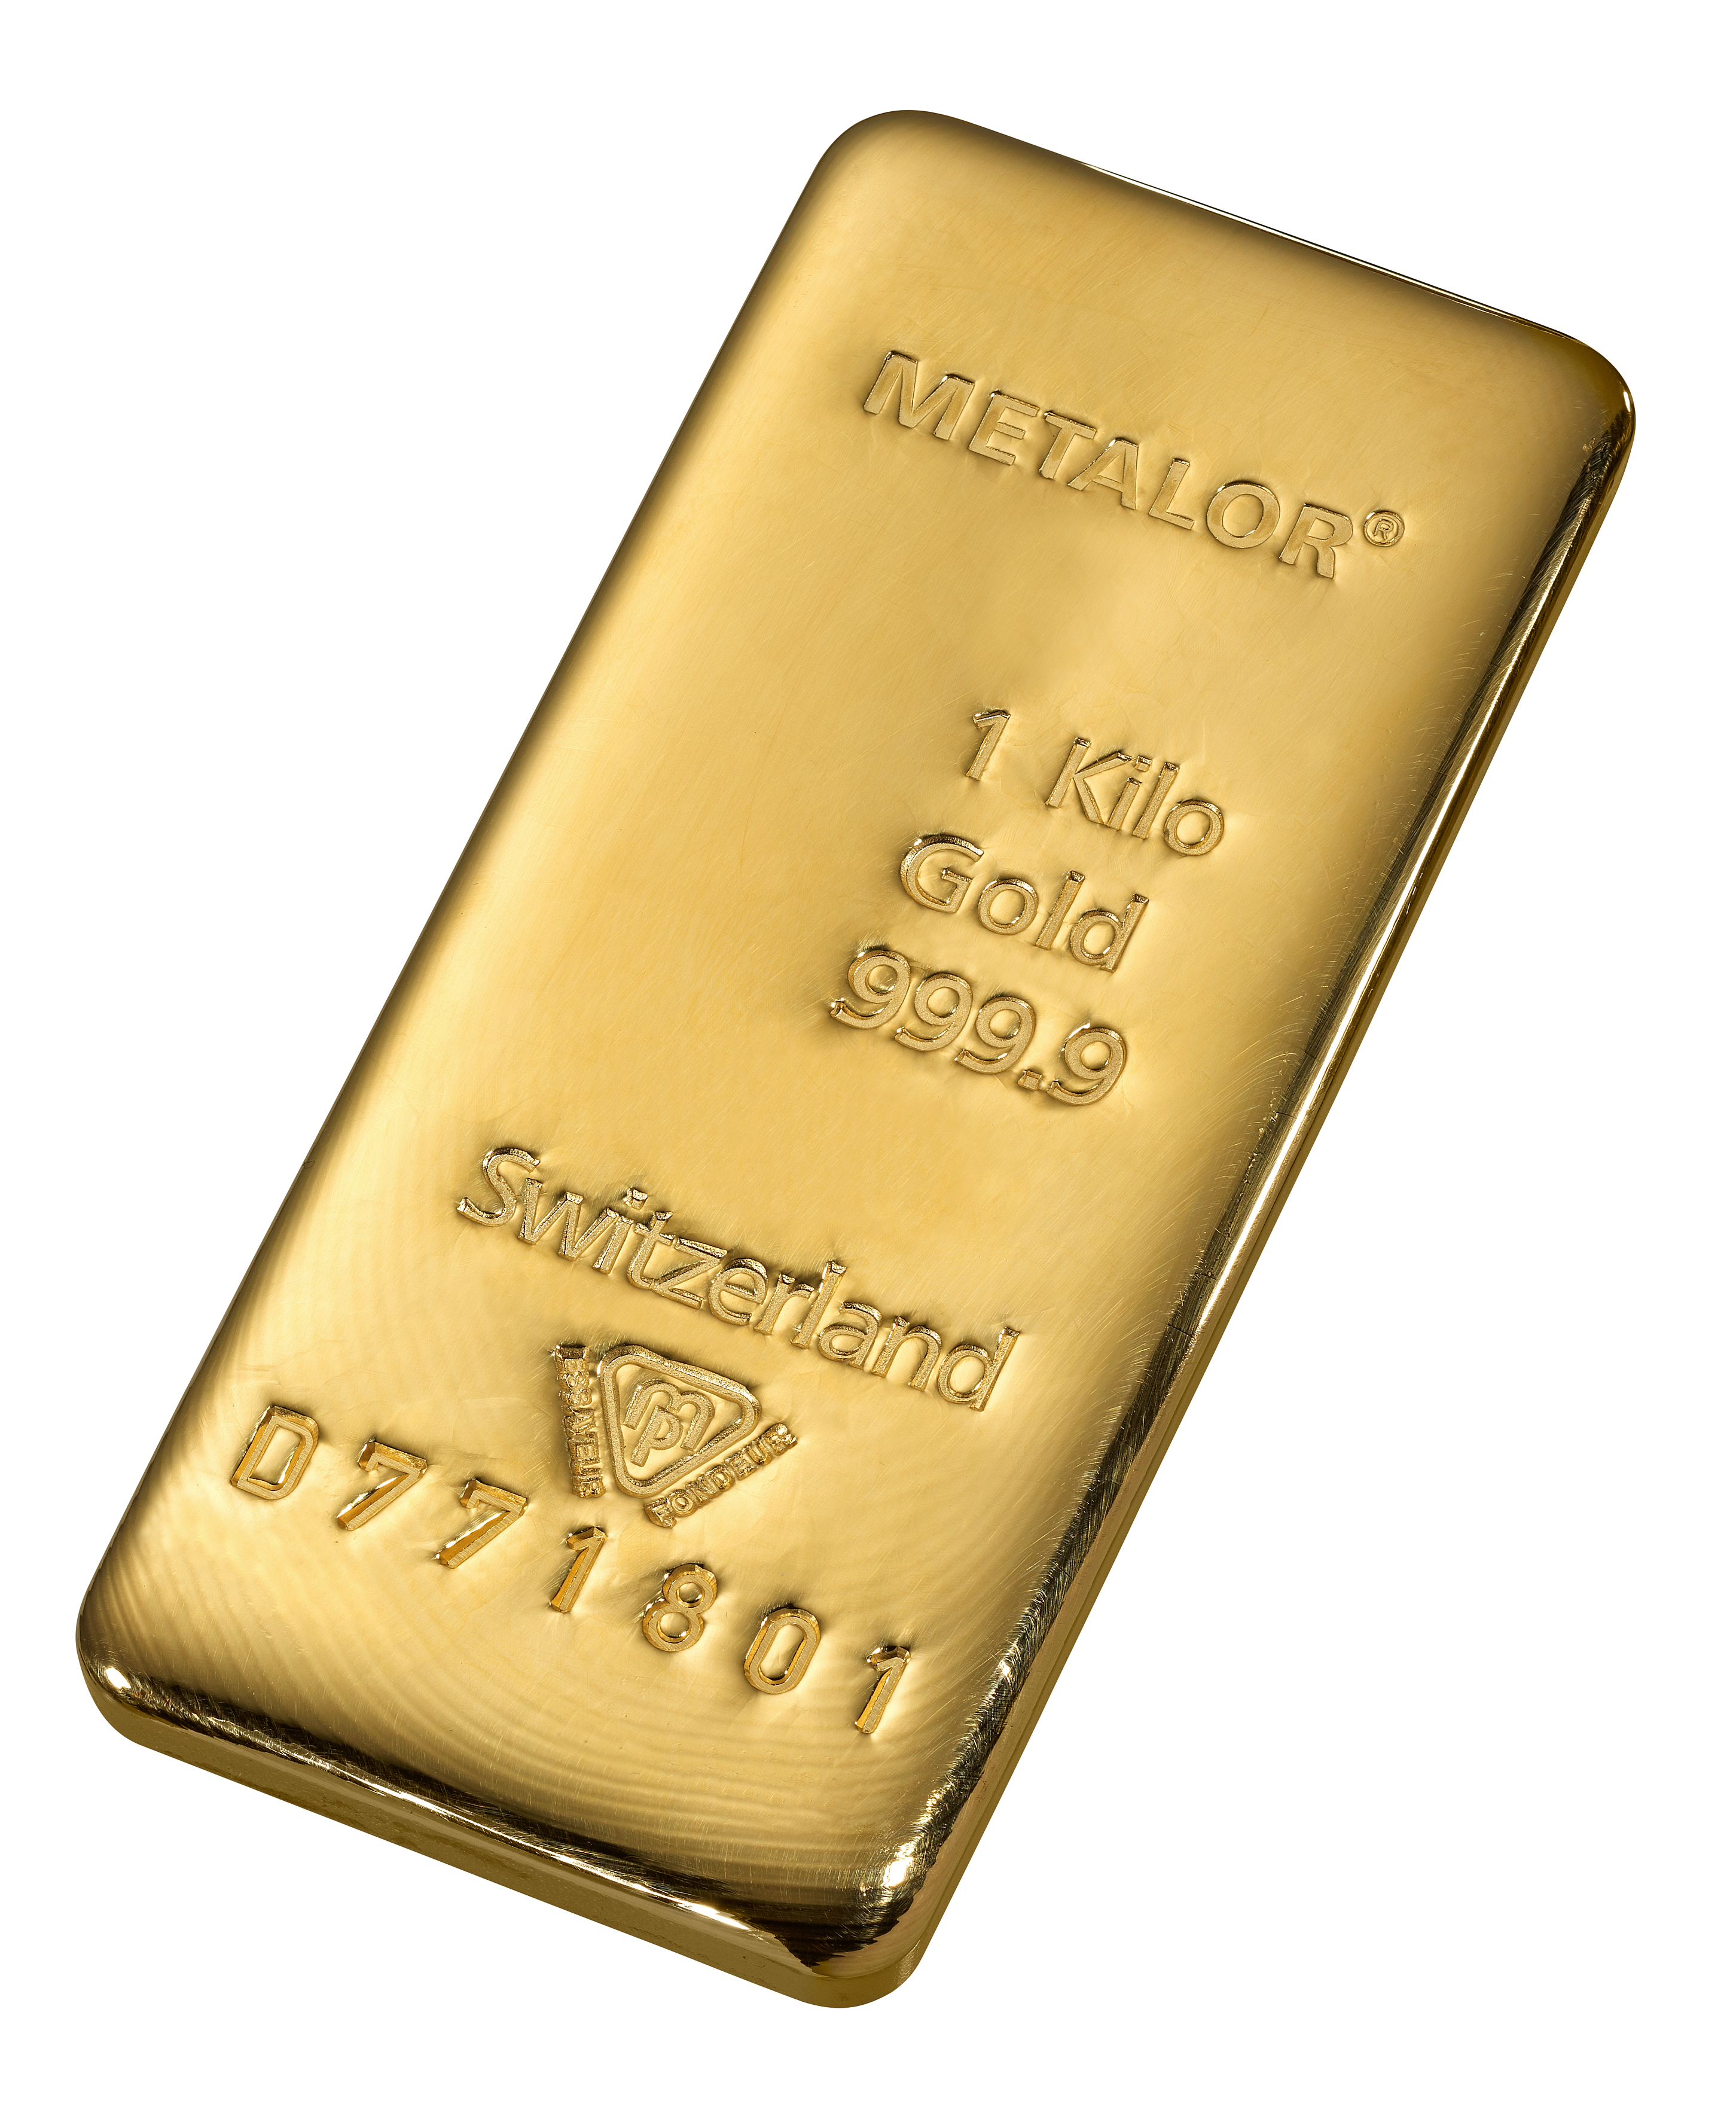 injecteren ethisch peddelen 1 kilo goud - Aankoop en verkoop goudprijs - beleggen in goud